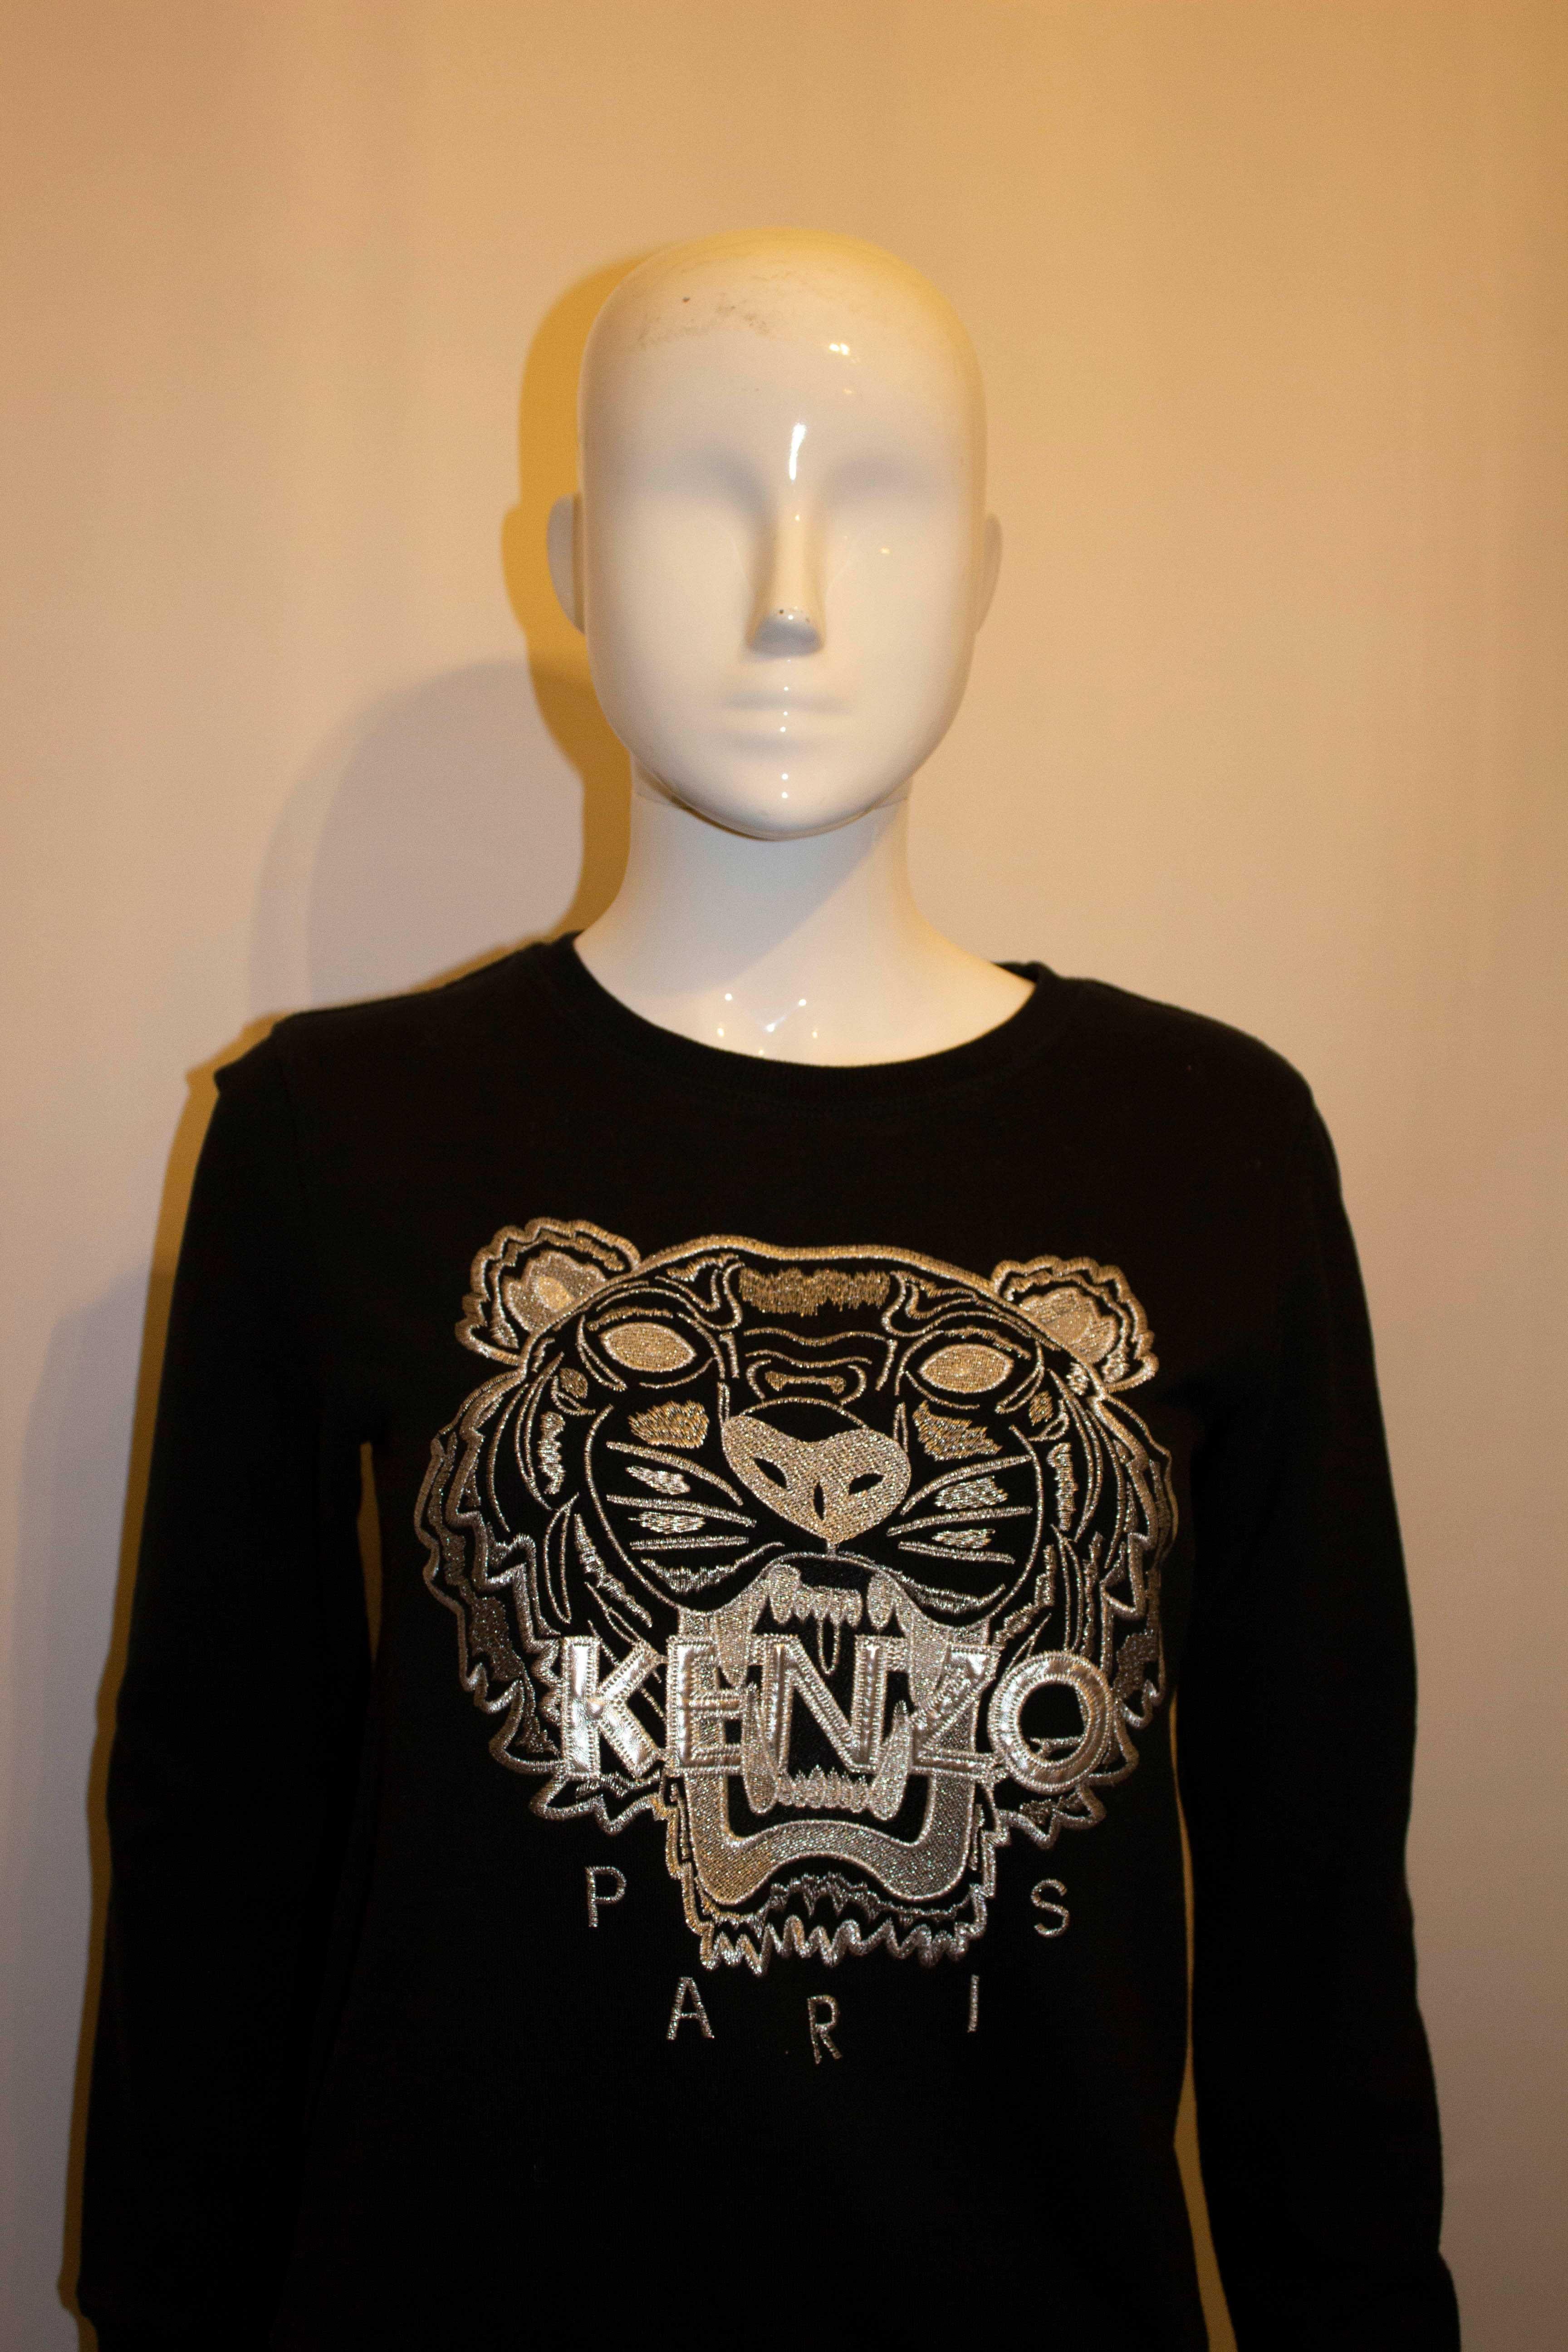 Un magnifique sweat-shirt non porté de Kenzo Paris. Le sweat-shirt est noir avec une broderie argentée sur le devant. 100% coton. Taille M Poitrine 36'', longueur 23''